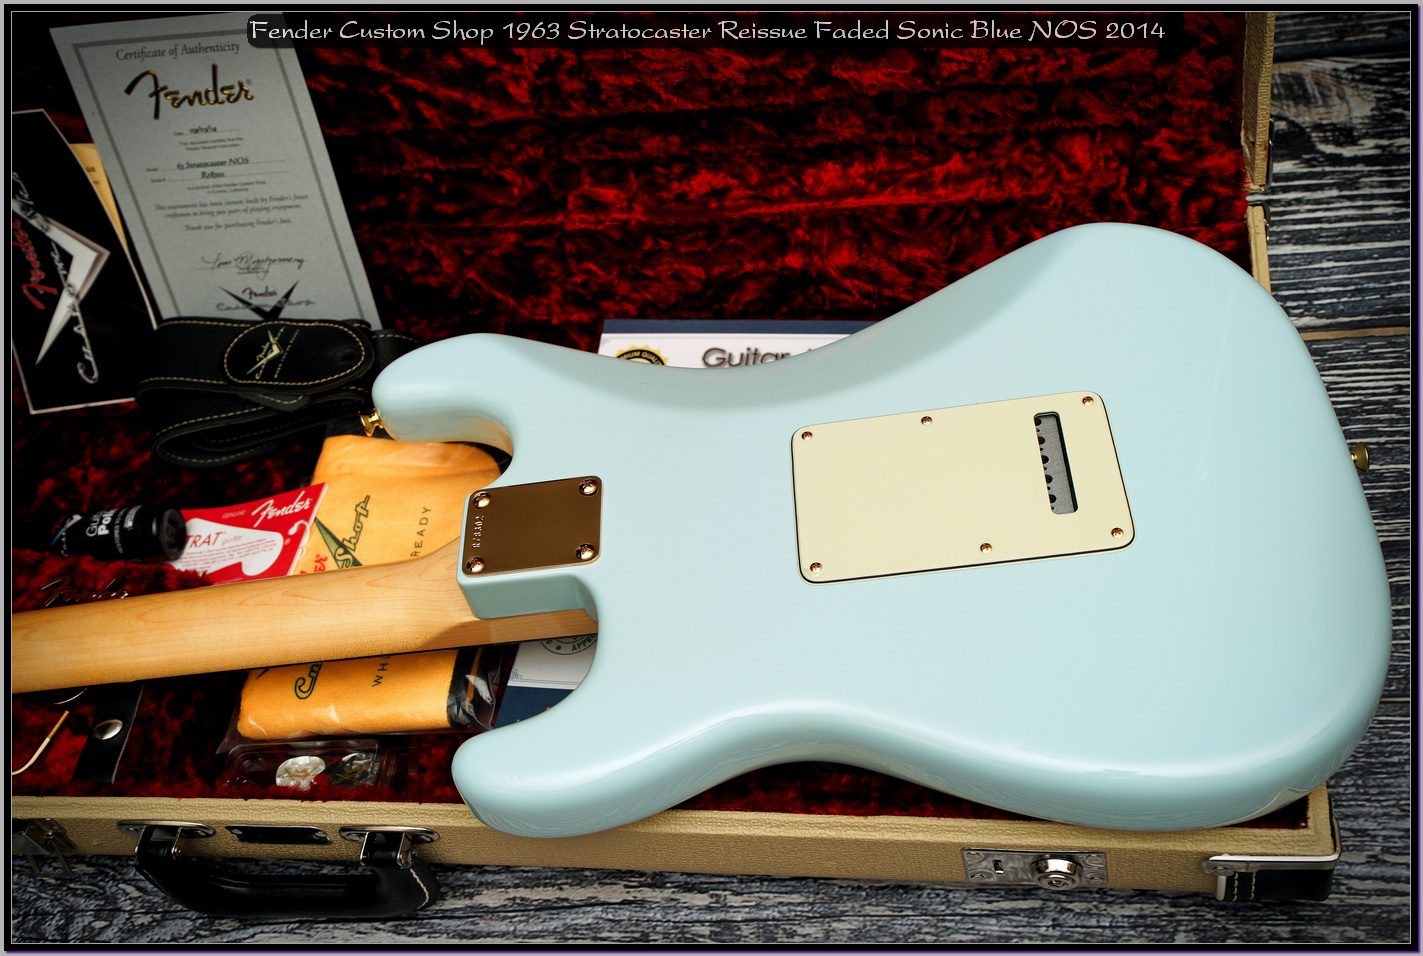 Fender Custom Shop 1963 Stratocaster Reissue Faded Sonic Blue NOS 2014 17_x1400.jpg